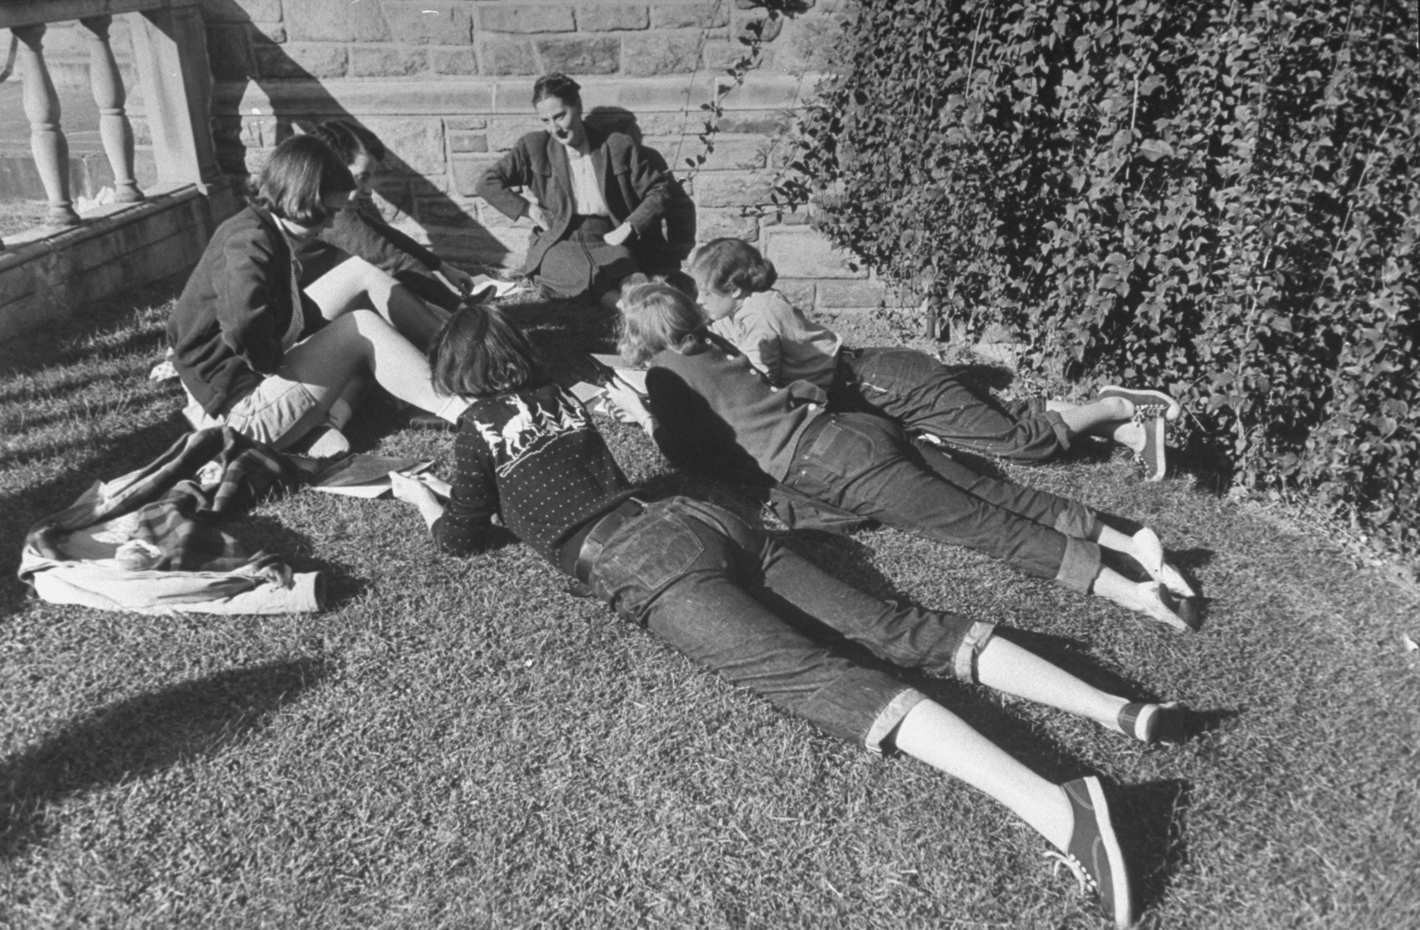 Занятие на улице в Вассар-колледже, город Поукипзи, штат Нью-Йорк, США, 1950. Уолтер Сандерс